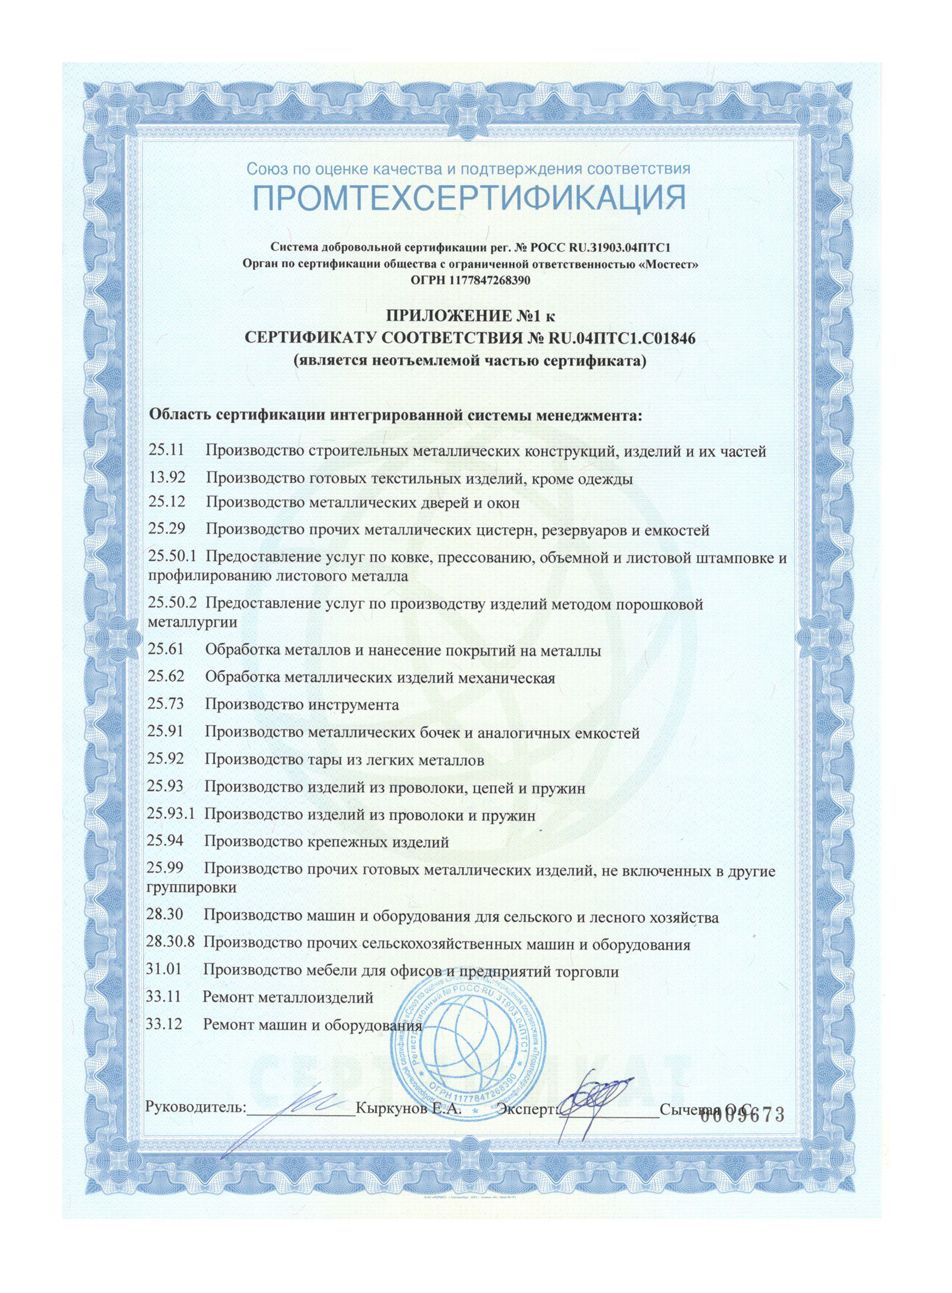 Сертификат соответствия № RU.04ПТС1.С01846 ISO 14001:2015